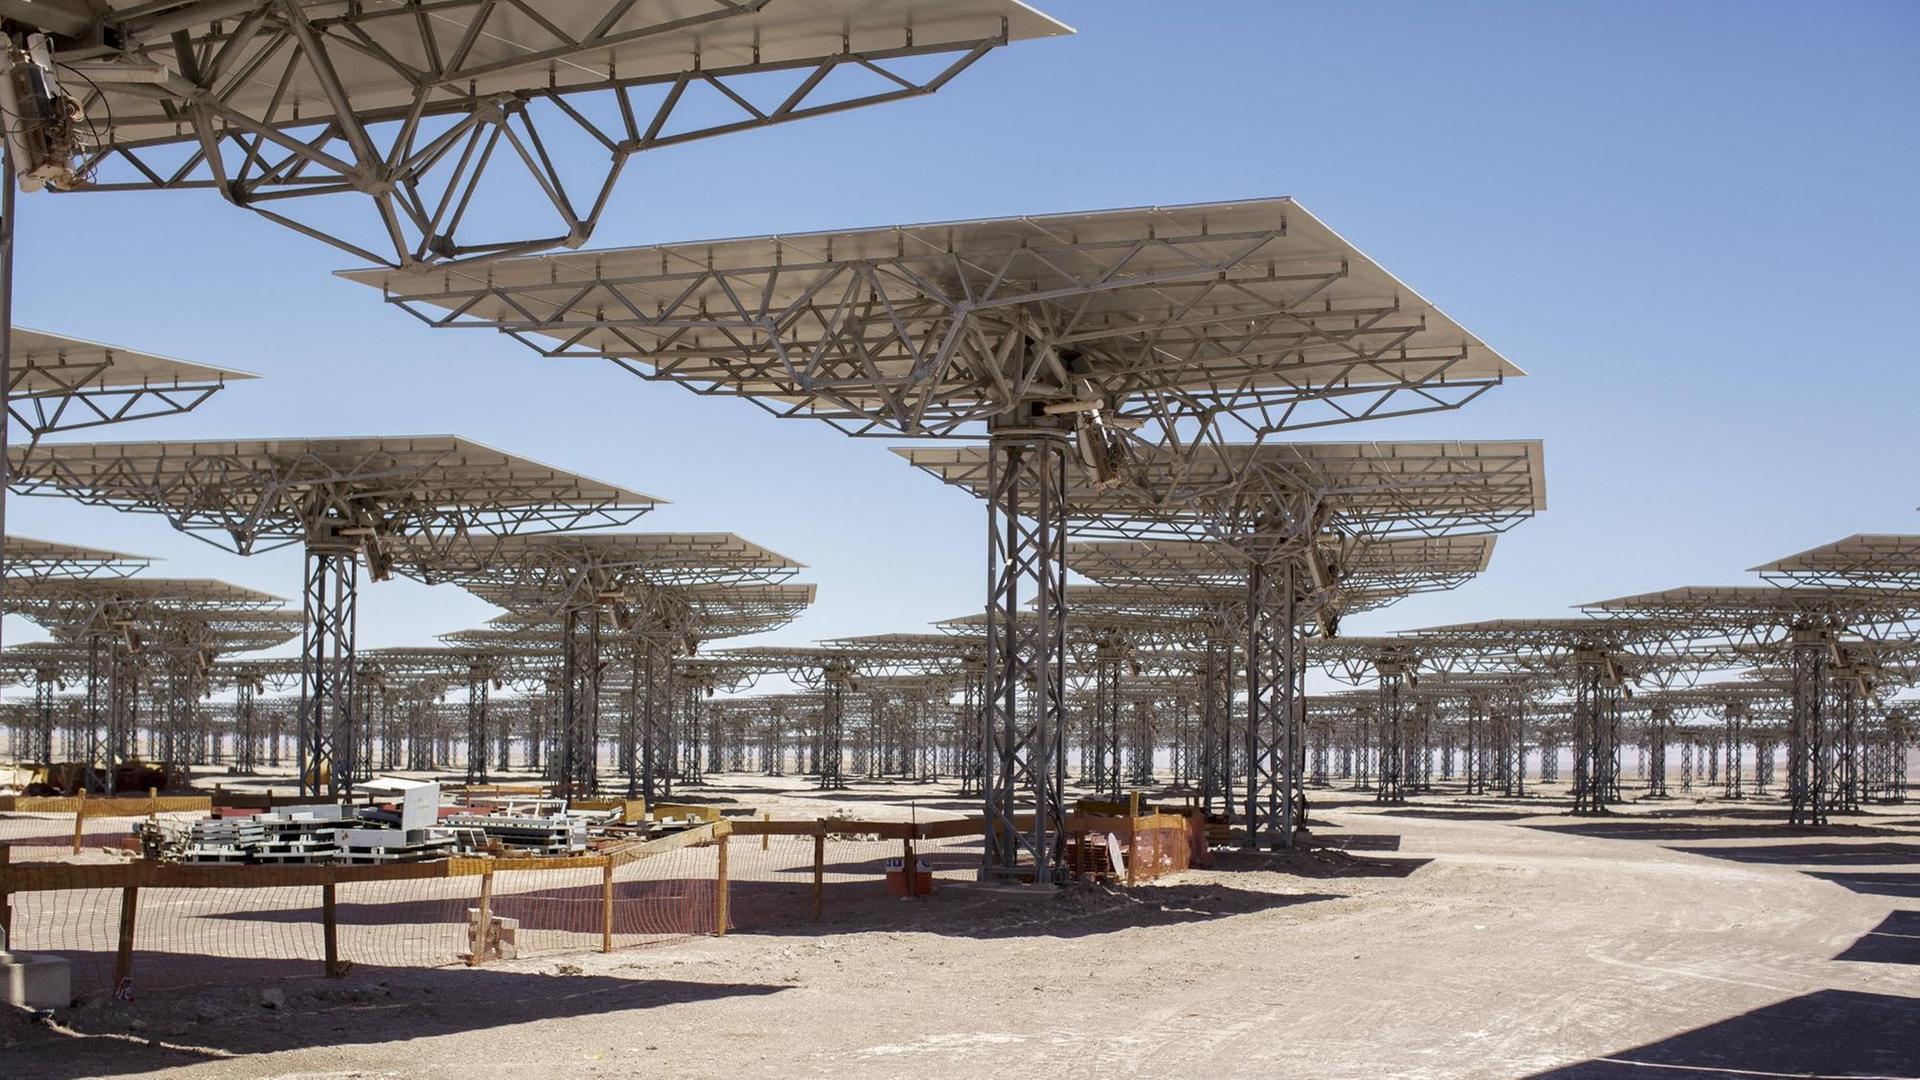 Bauarbeiten für ein Solarkraftwerk in der Atacama Wüste in Chile. Dabei handelt es sich um die CPS-Anlage (Concentrated Solar Power) Planta Solar Cerro Dominador.